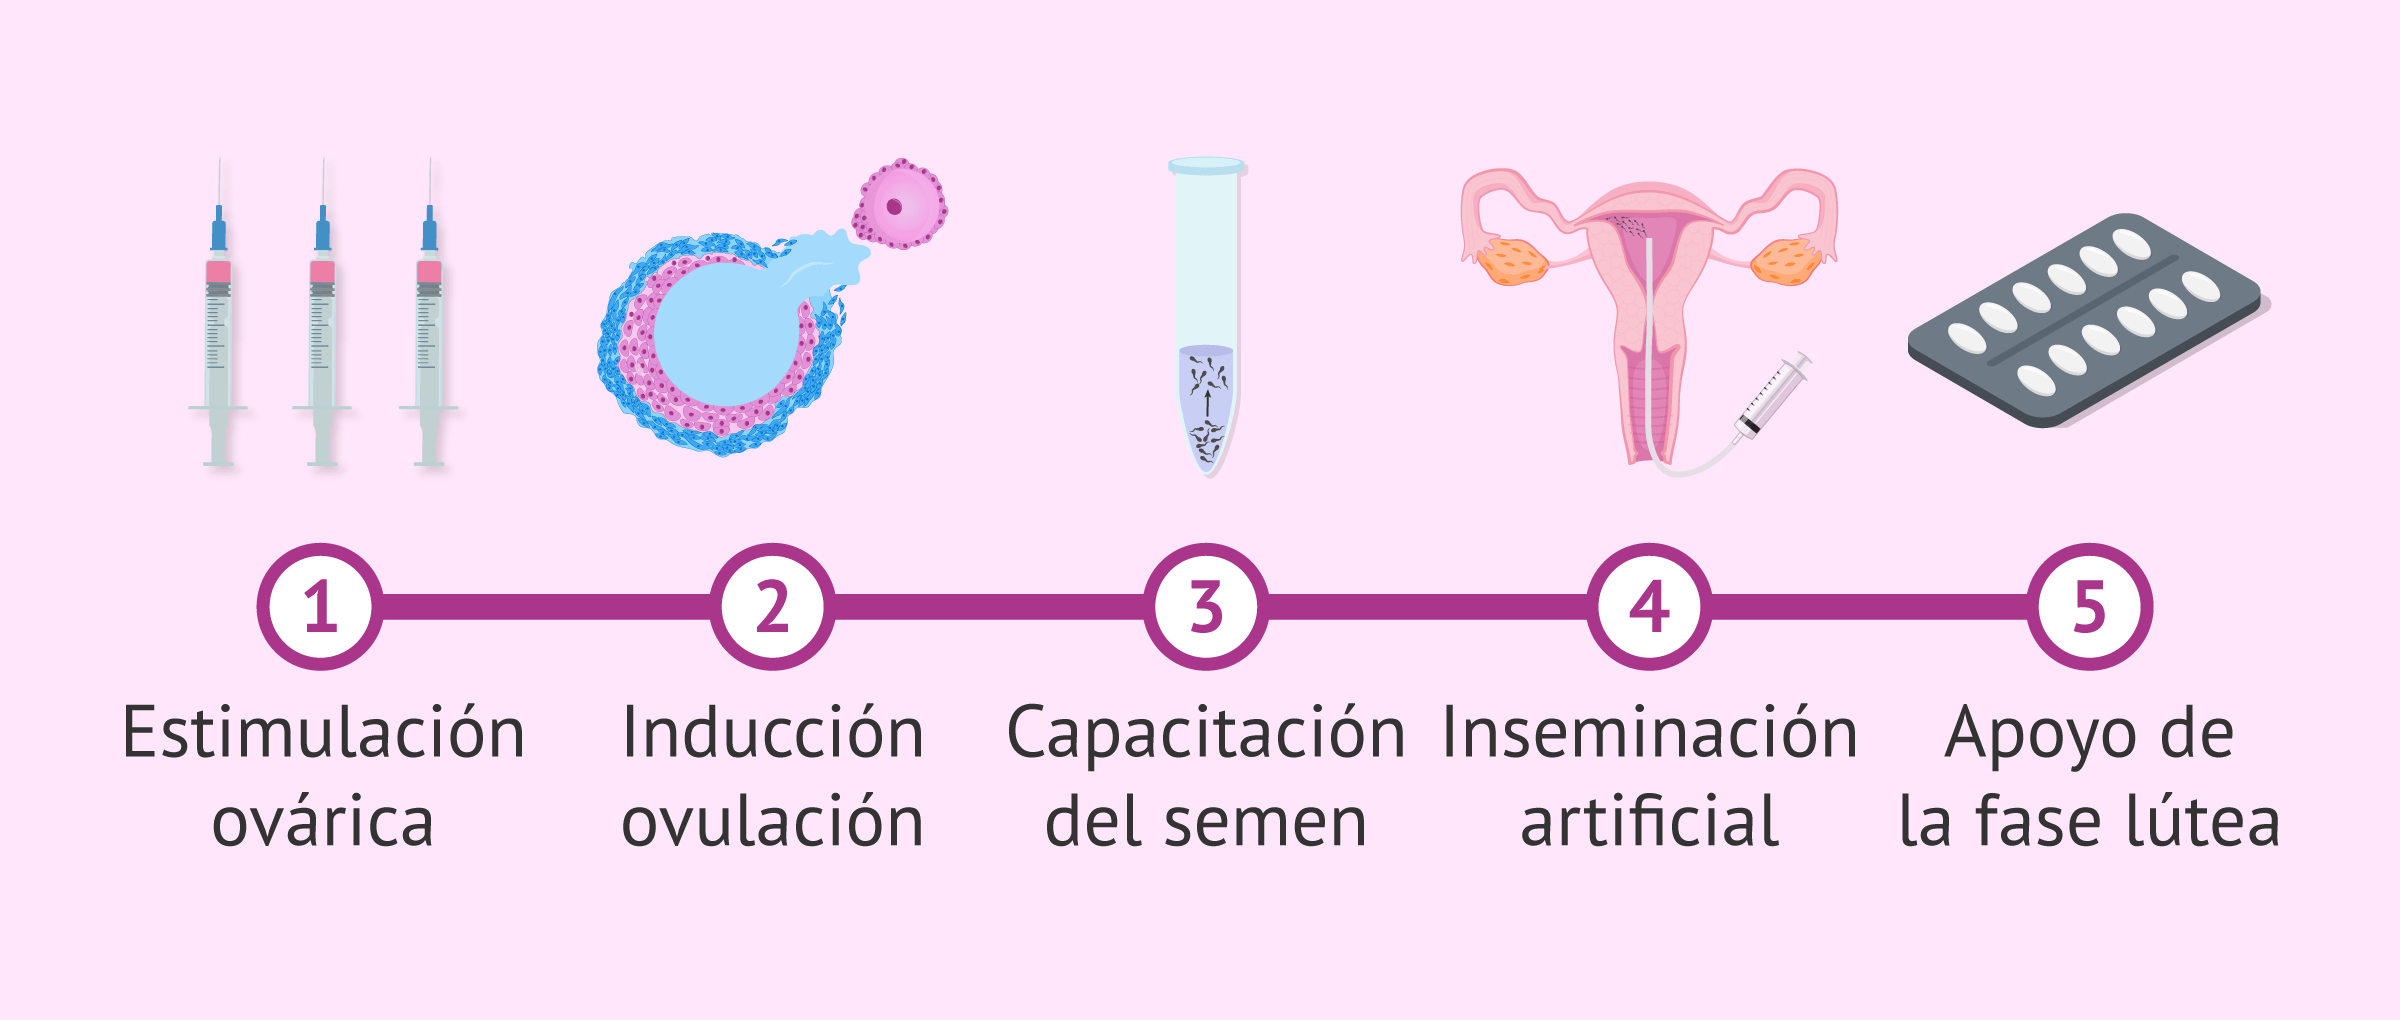 Pasos de un tratamiento con inseminación artificial (IA)